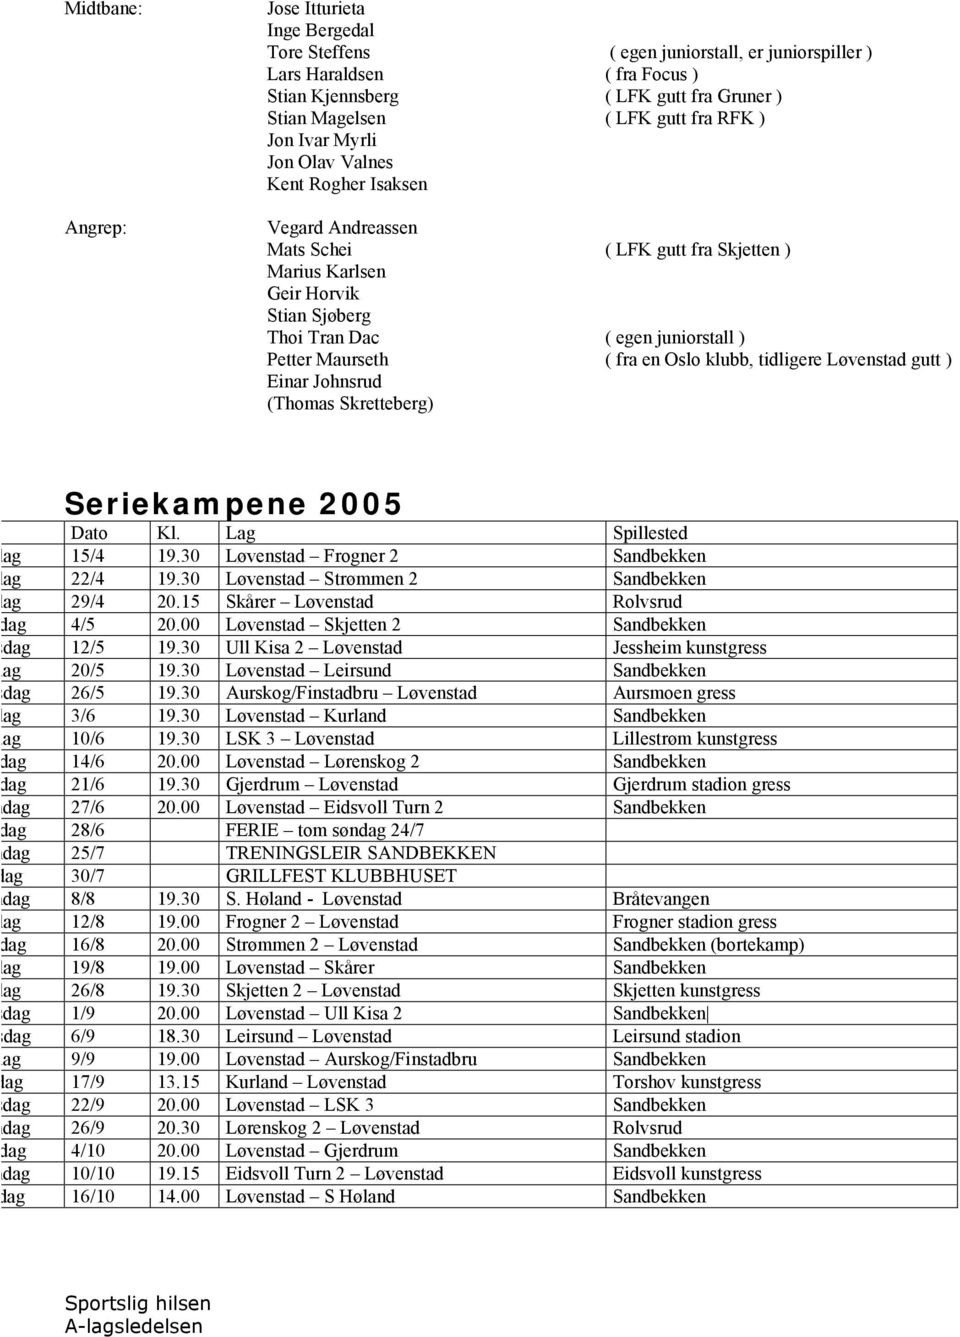 Maurseth ( fra en Oslo klubb, tidligere Løvenstad gutt ) Einar Johnsrud (Thomas Skretteberg) Seriekampene 2005 Dato Kl. Lag Spillested Fredag 15/4 19.30 Løvenstad Frogner 2 Sandbekken Fredag 22/4 19.